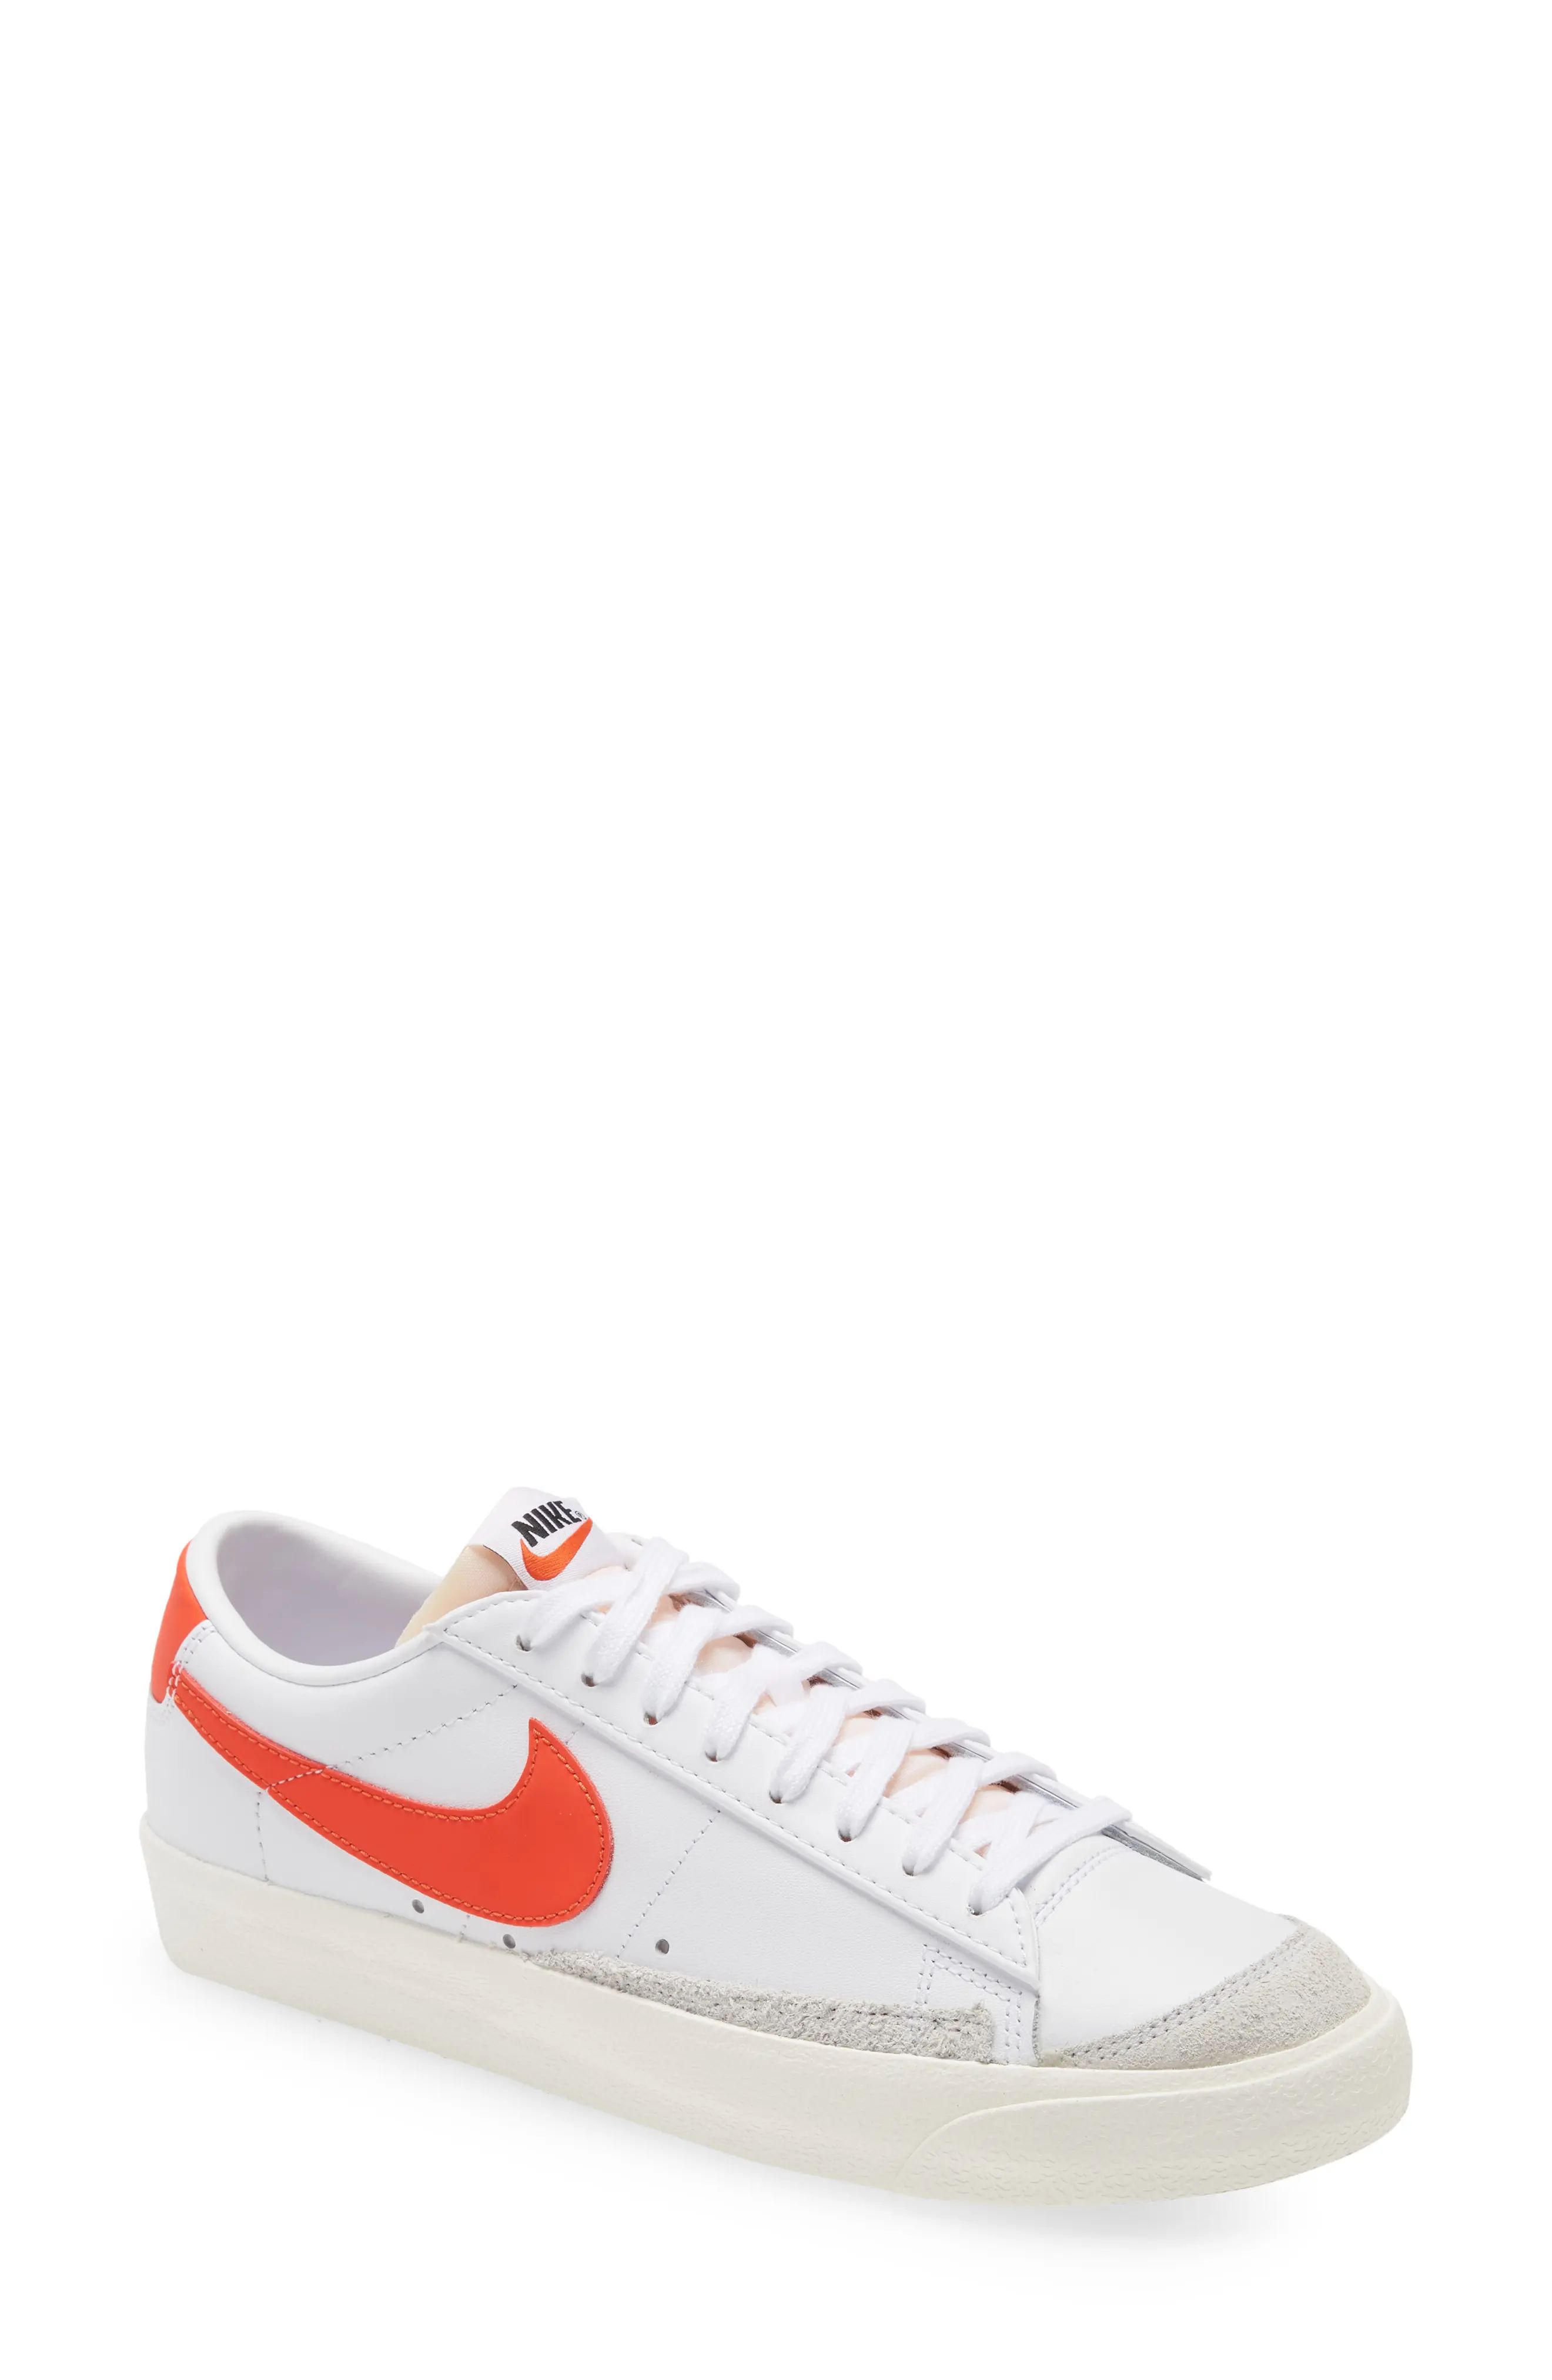 Nike Blazer Low '77 Sneaker in White/Orange at Nordstrom | Nordstrom